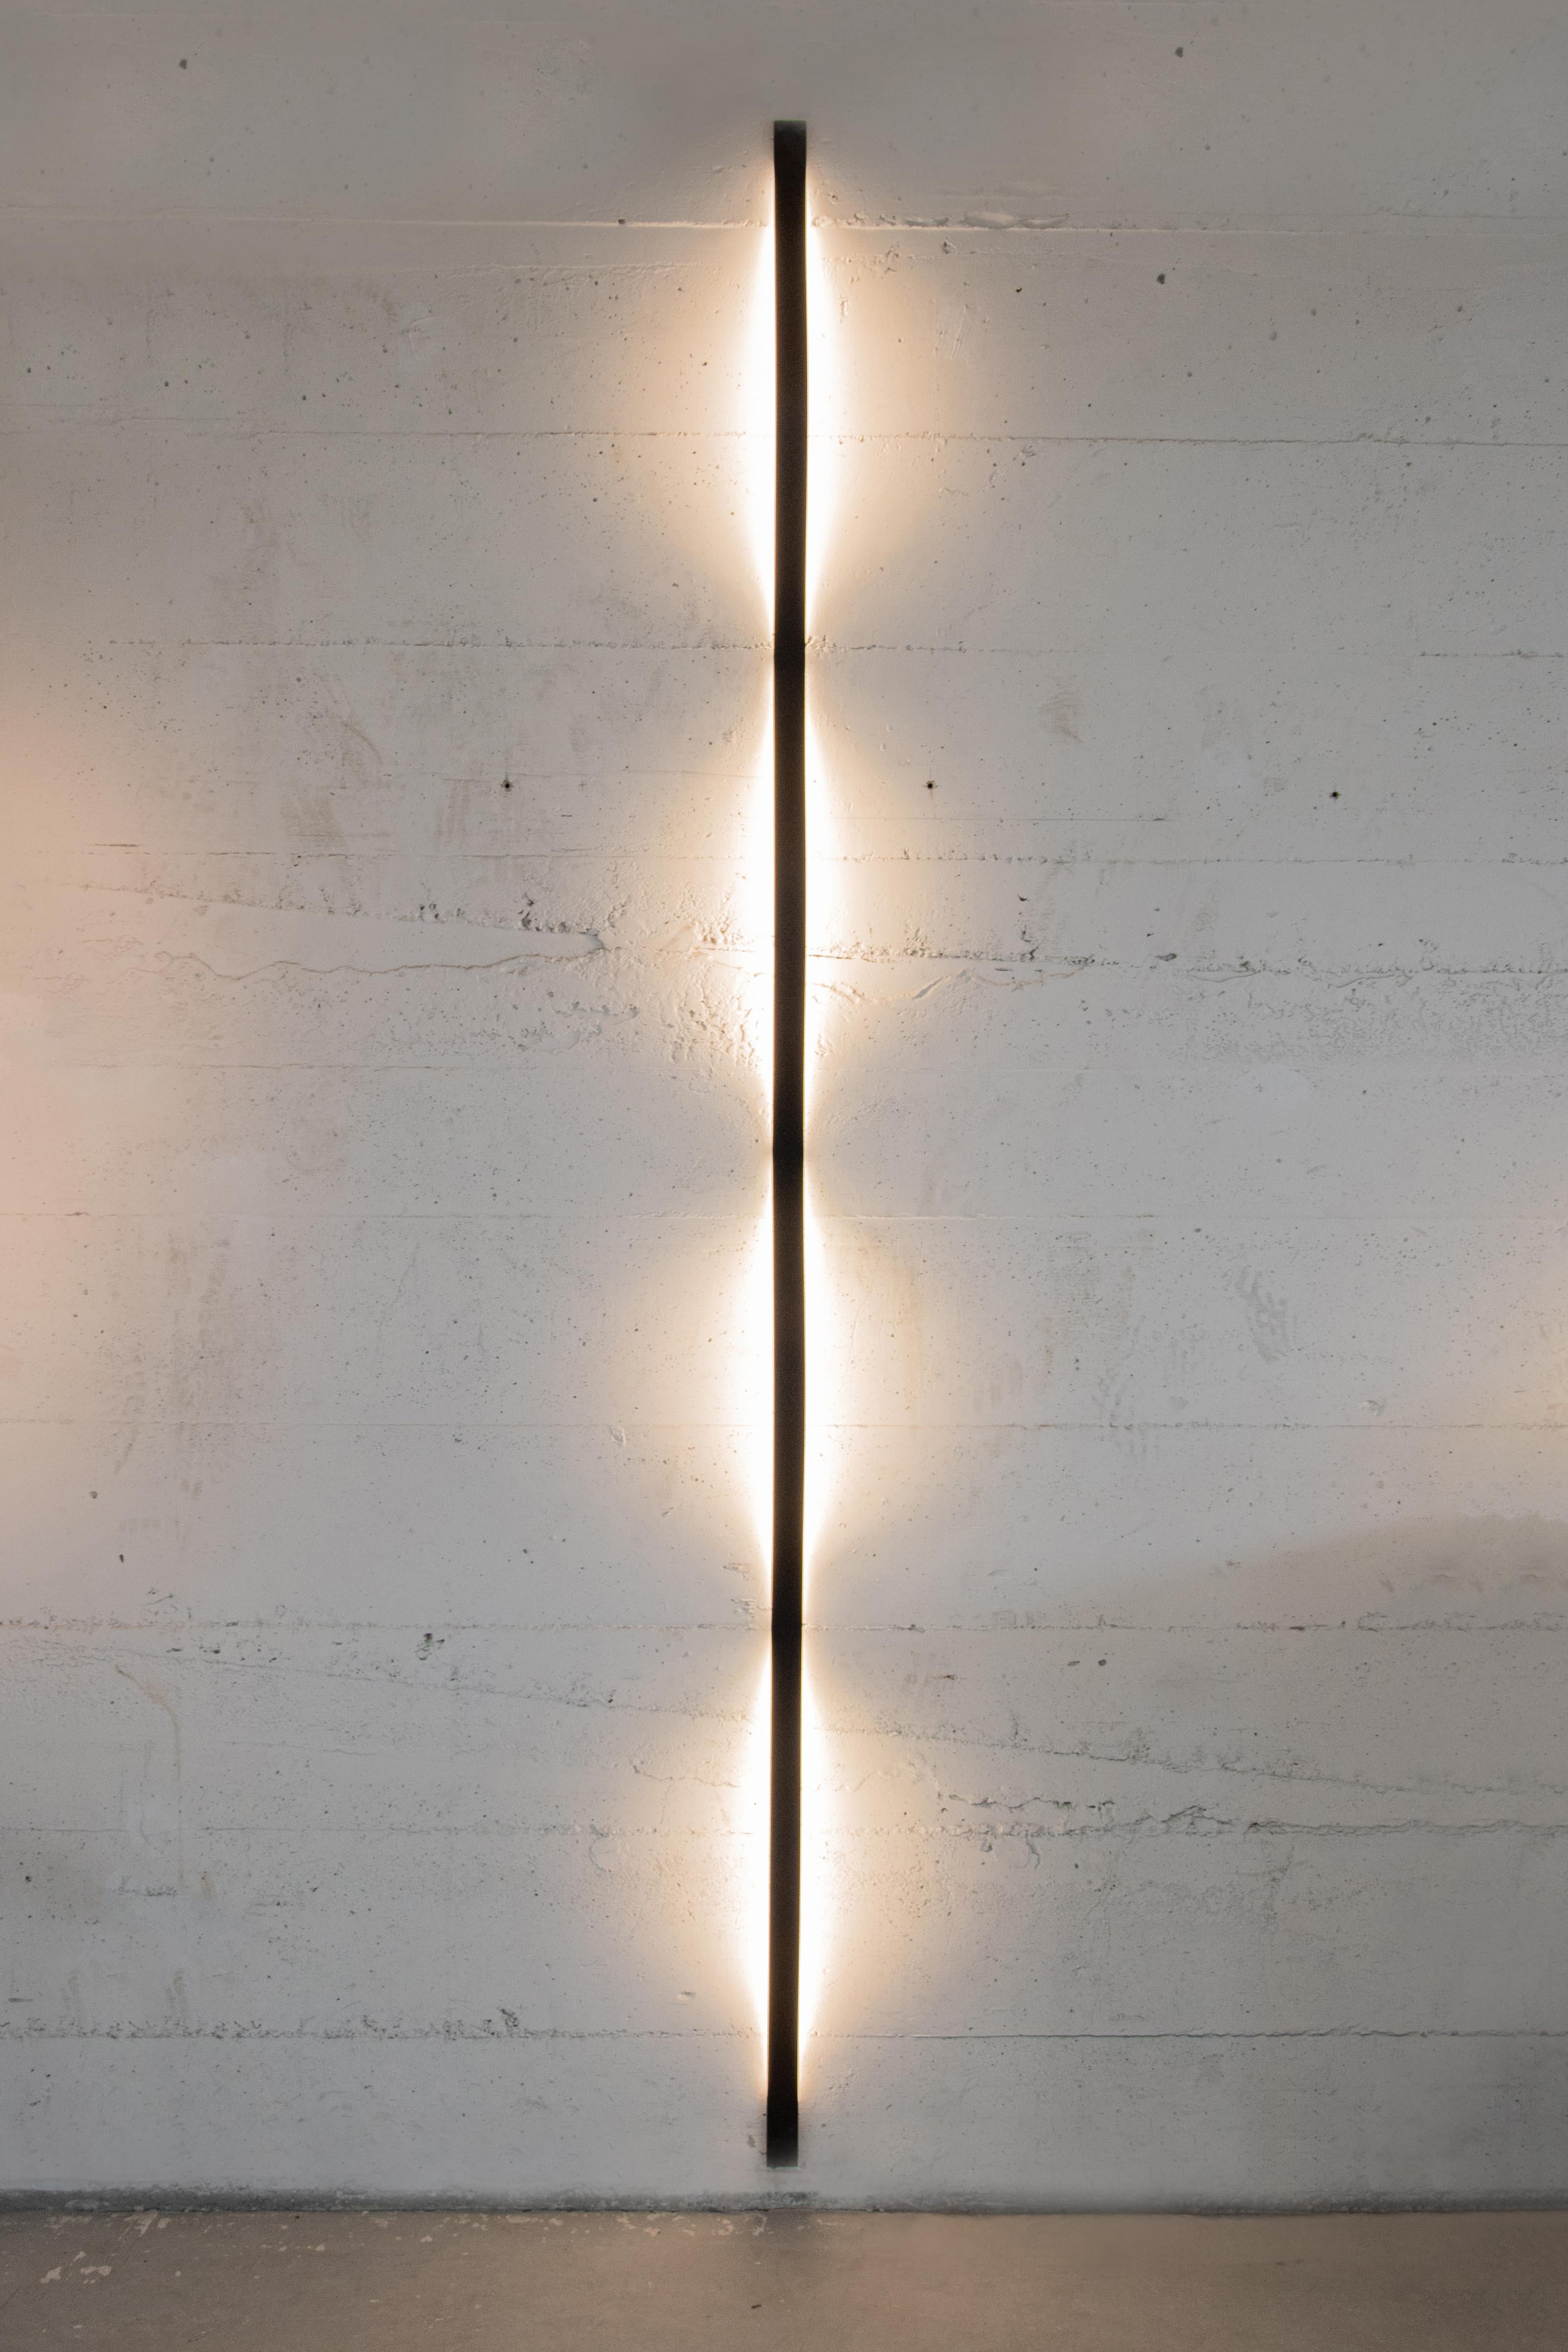 Les lampes Steele sont fabriquées à partir de bandes d'acier à ressort recouvertes d'une couche de poudre. En fixant la lampe au mur ou au plafond à l'aide de petits supports, la forme d'onde apparaît sous l'effet de la tension du